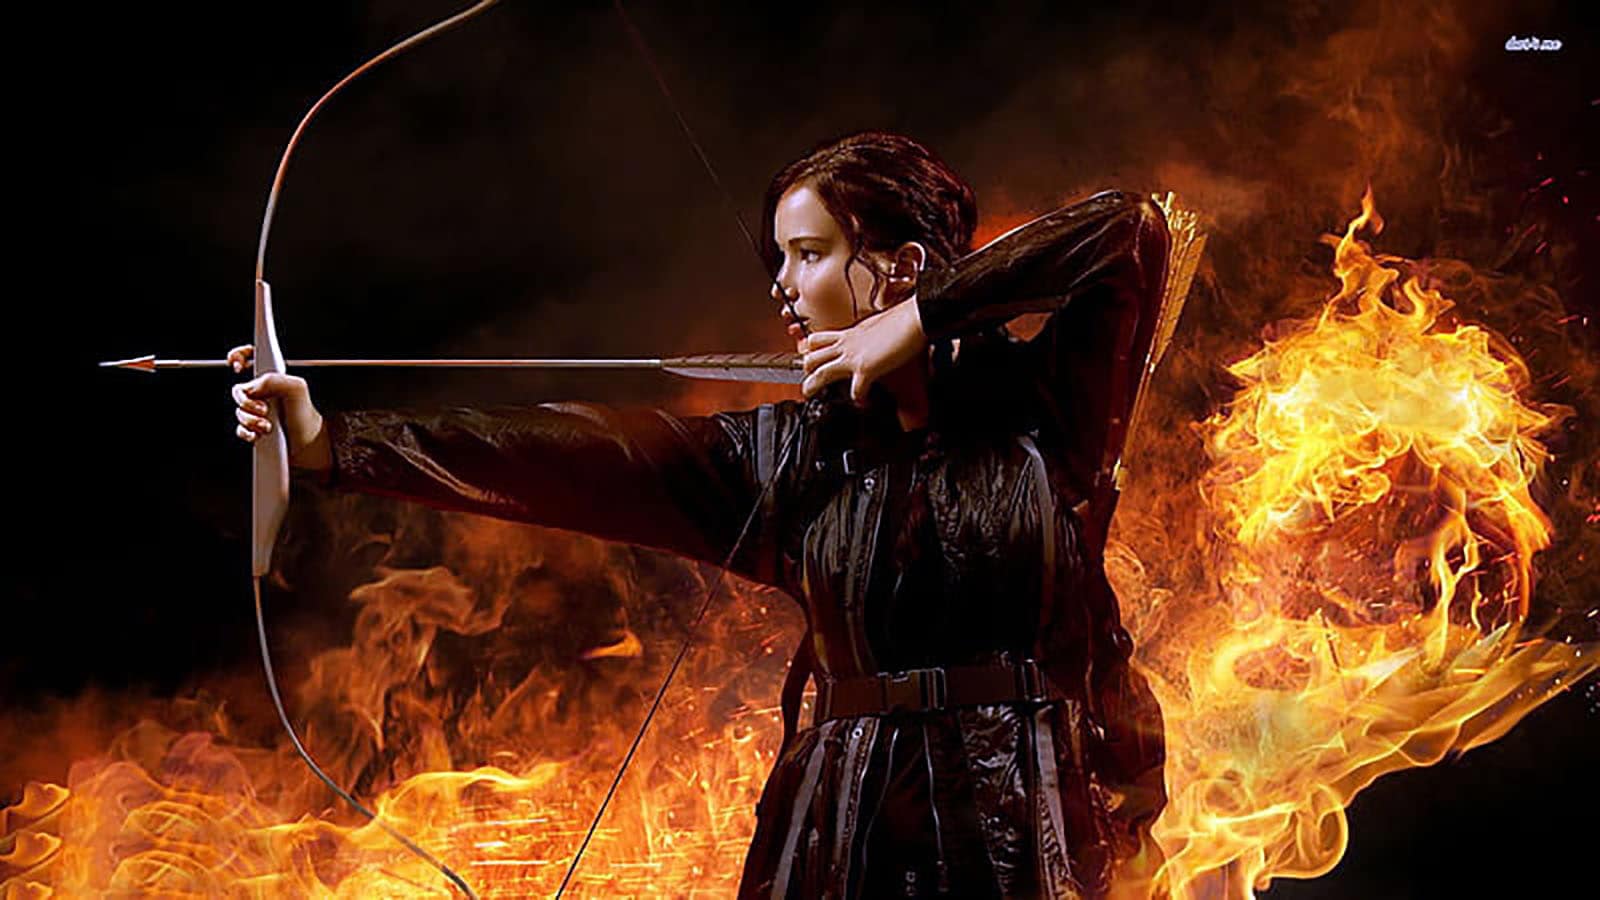 Celebrating Female Archers Historical & Mythological Icons - Katniss Everdeen